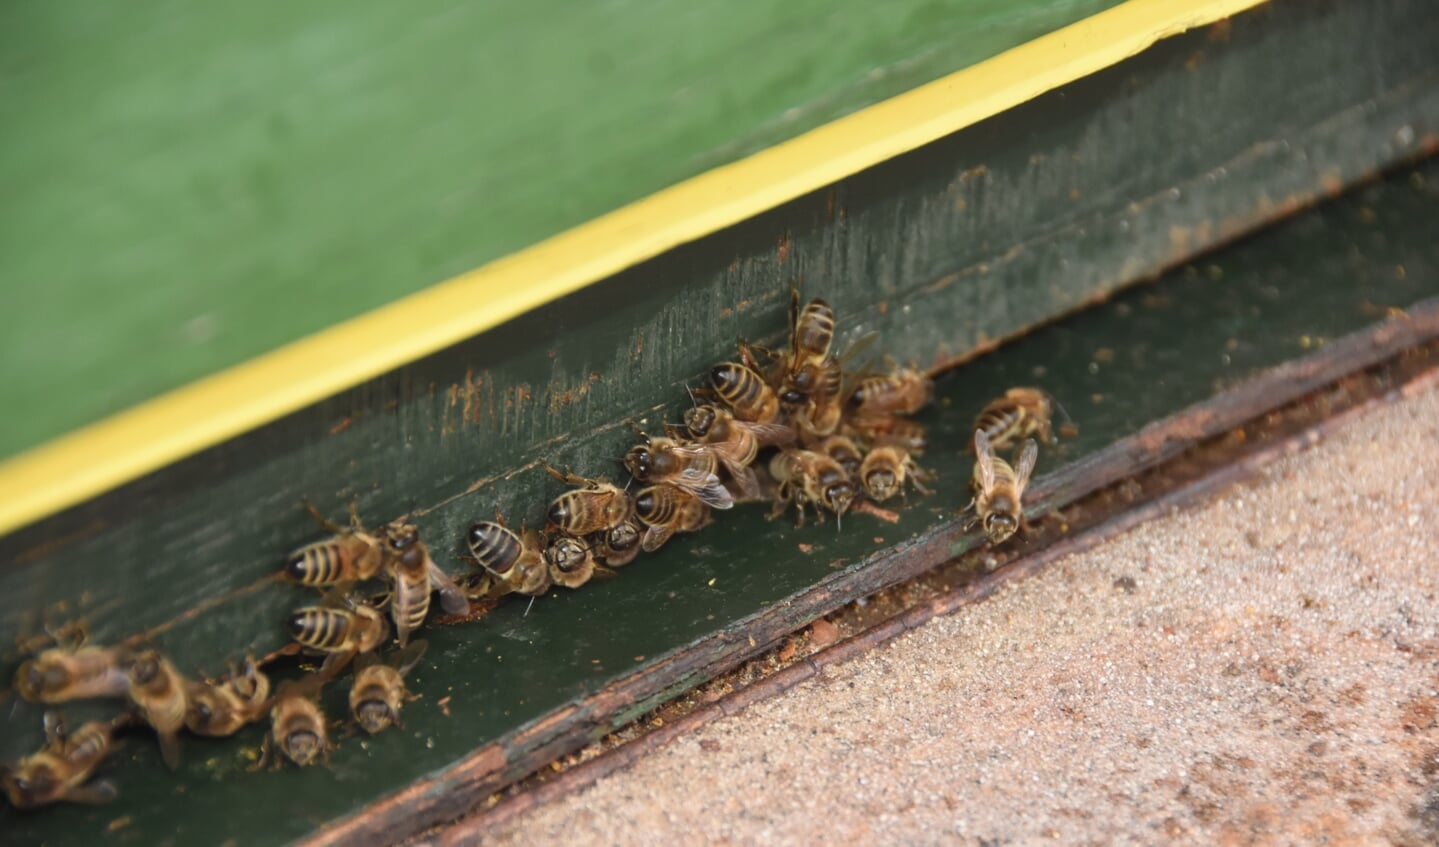 De bijen op de volkstuin